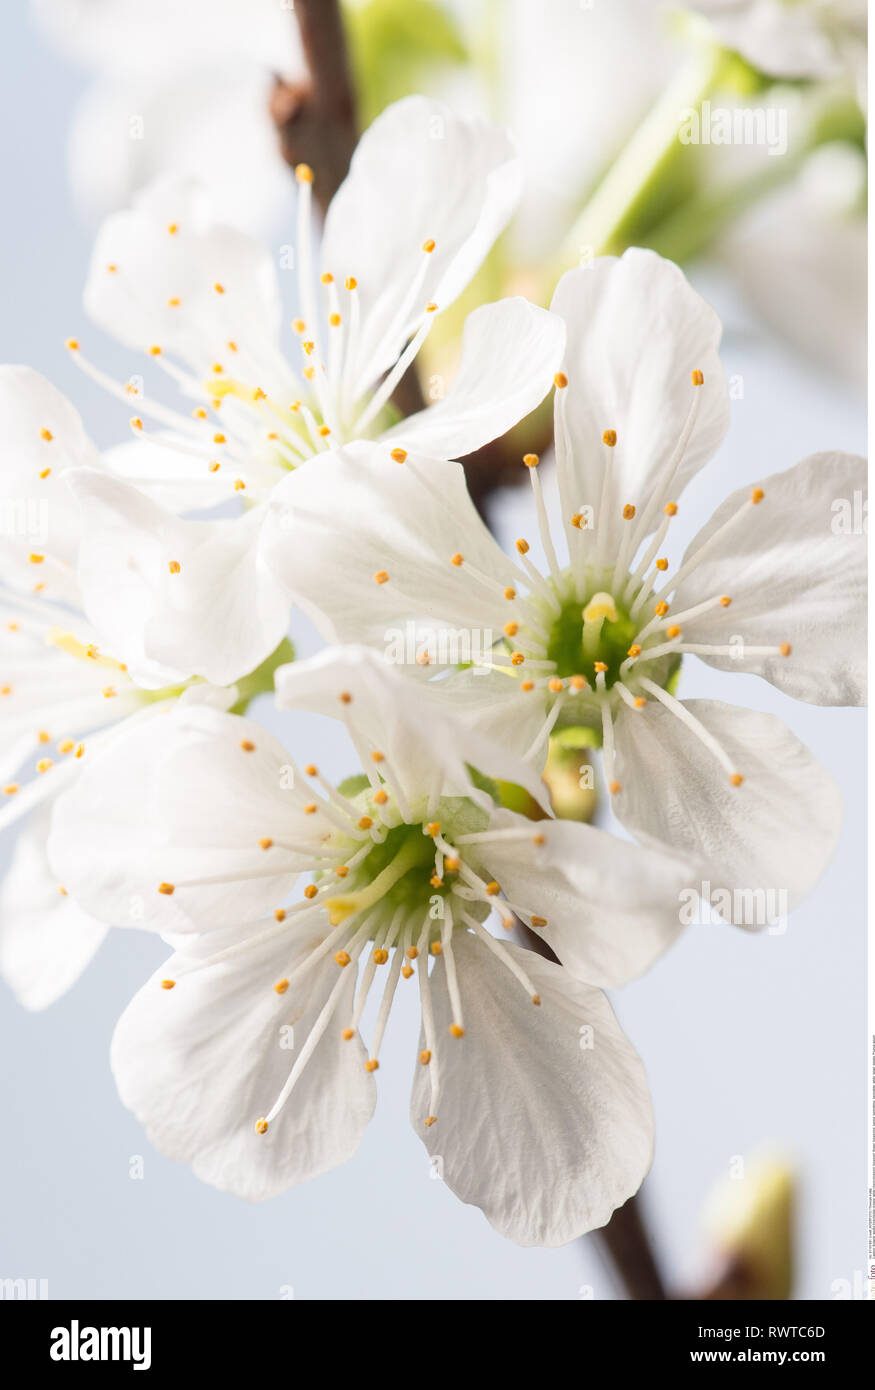 La botanica, bianco di fiori di ciliegio, attenzione! Per Greetingcard-Use / Postcard-Use nei Paesi di lingua tedesca talune restrizioni possono applicare Foto Stock